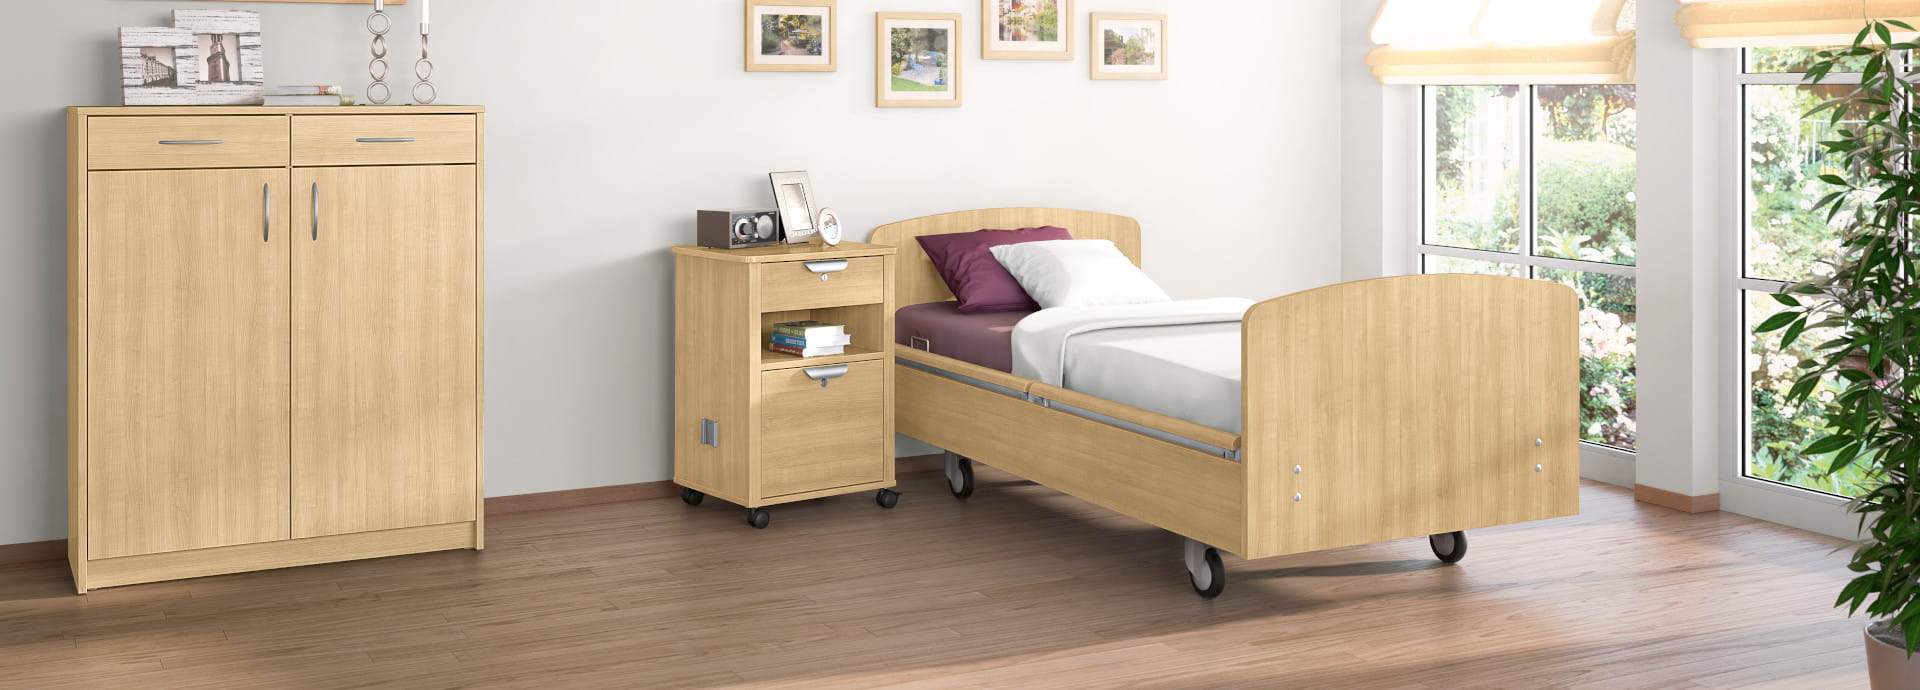 wissner-bosserhoff steht für hochwertige Pflegebetten für Altenheime, stationäre und teilstationäre Pflegeheime, Krankenhäuser und Kliniken.